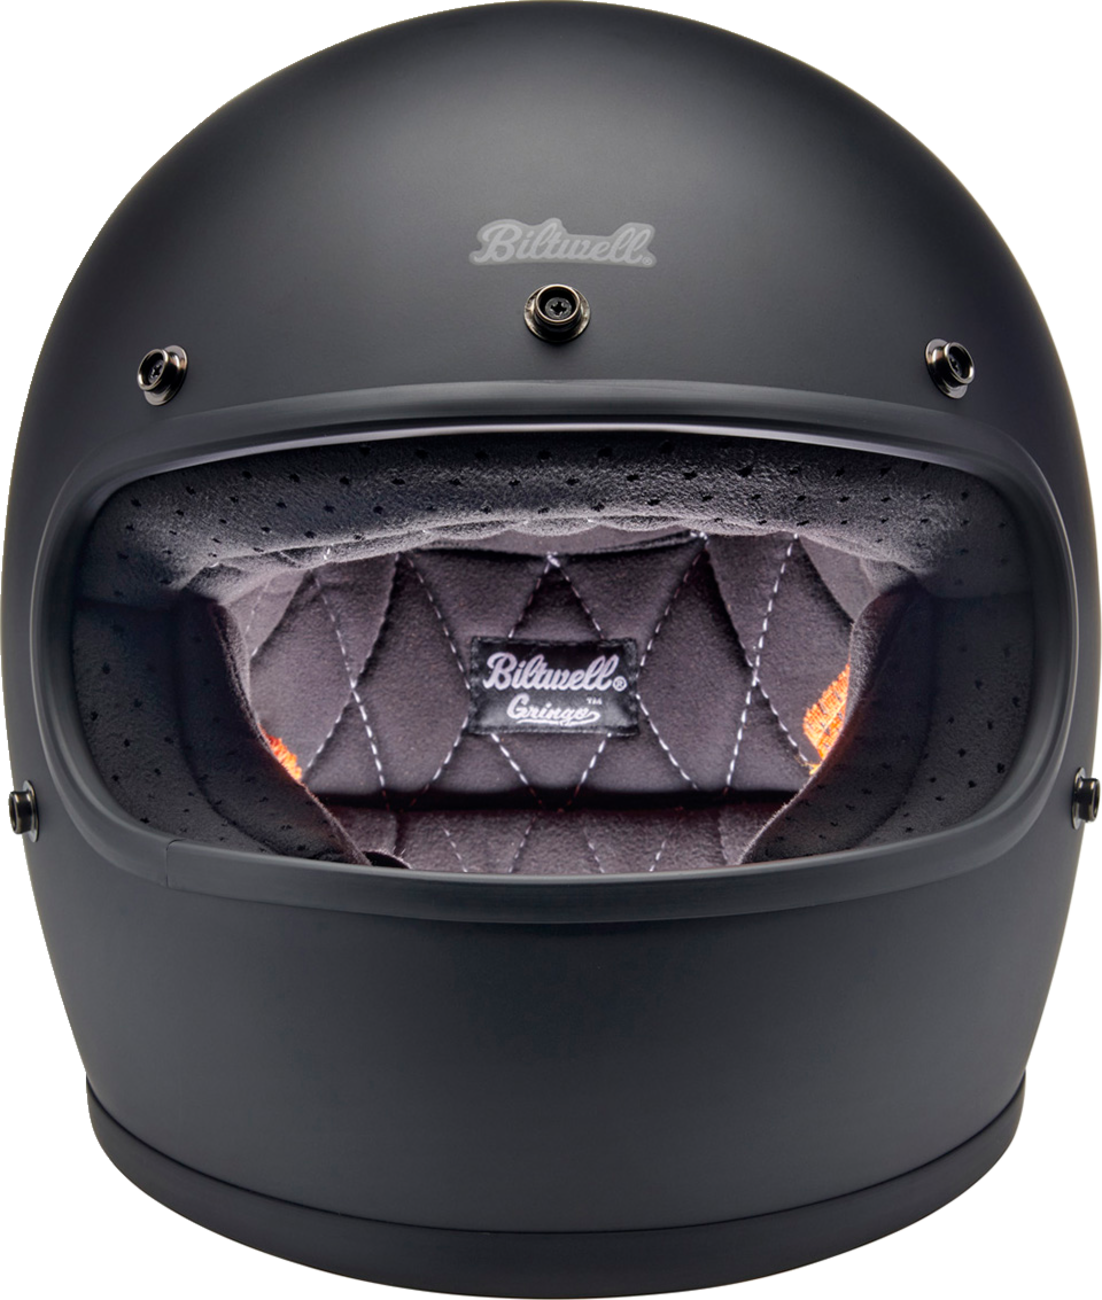 BILTWELL Gringo S Helmet - Flat Black - Small 1003-201-502